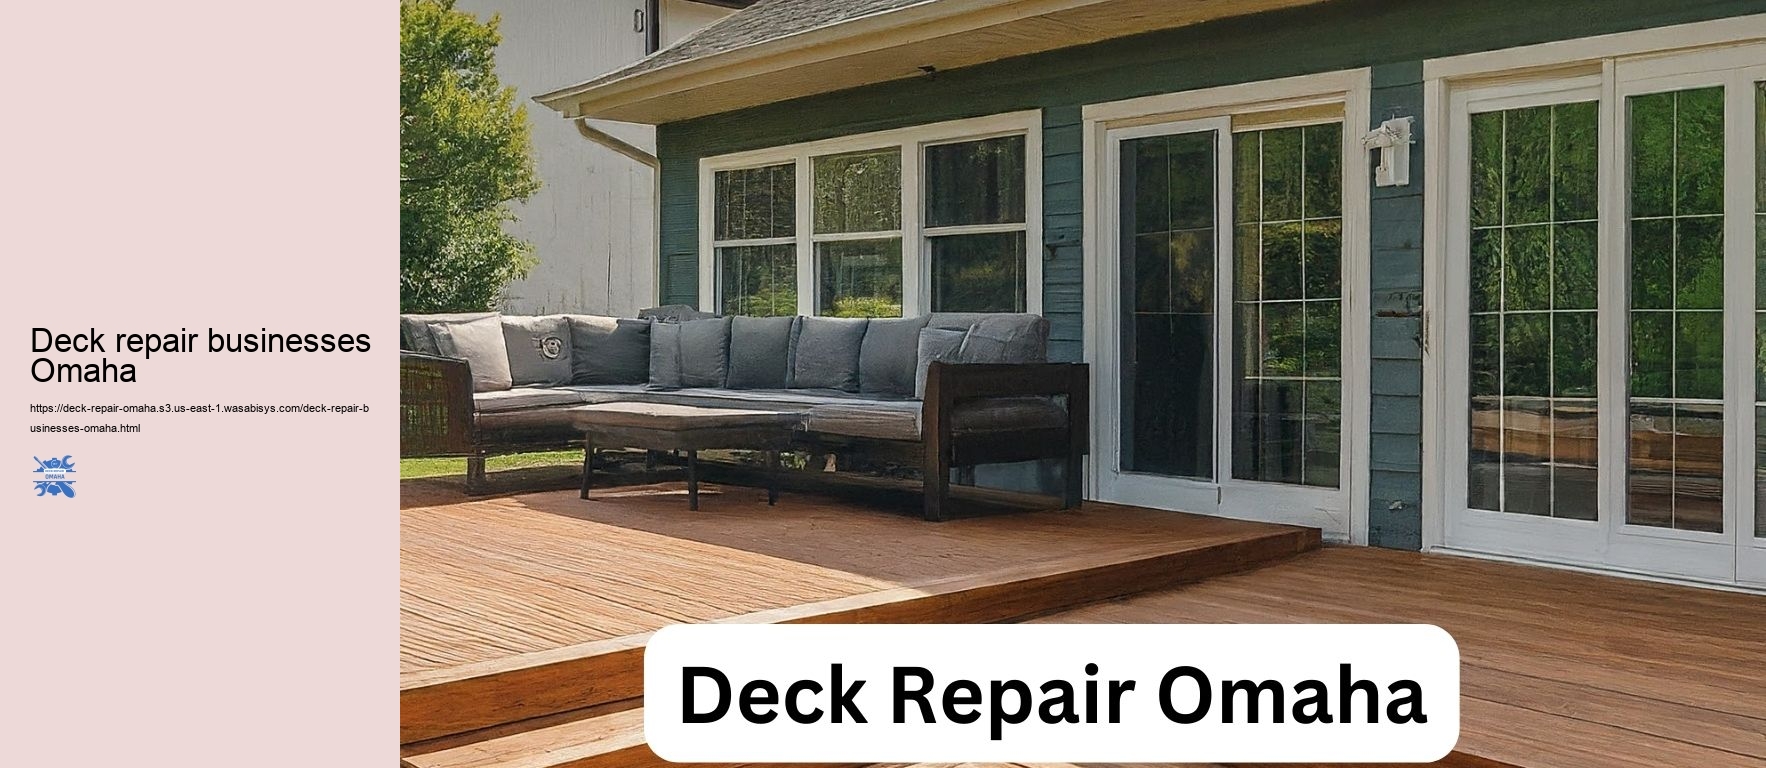 Deck repair businesses Omaha